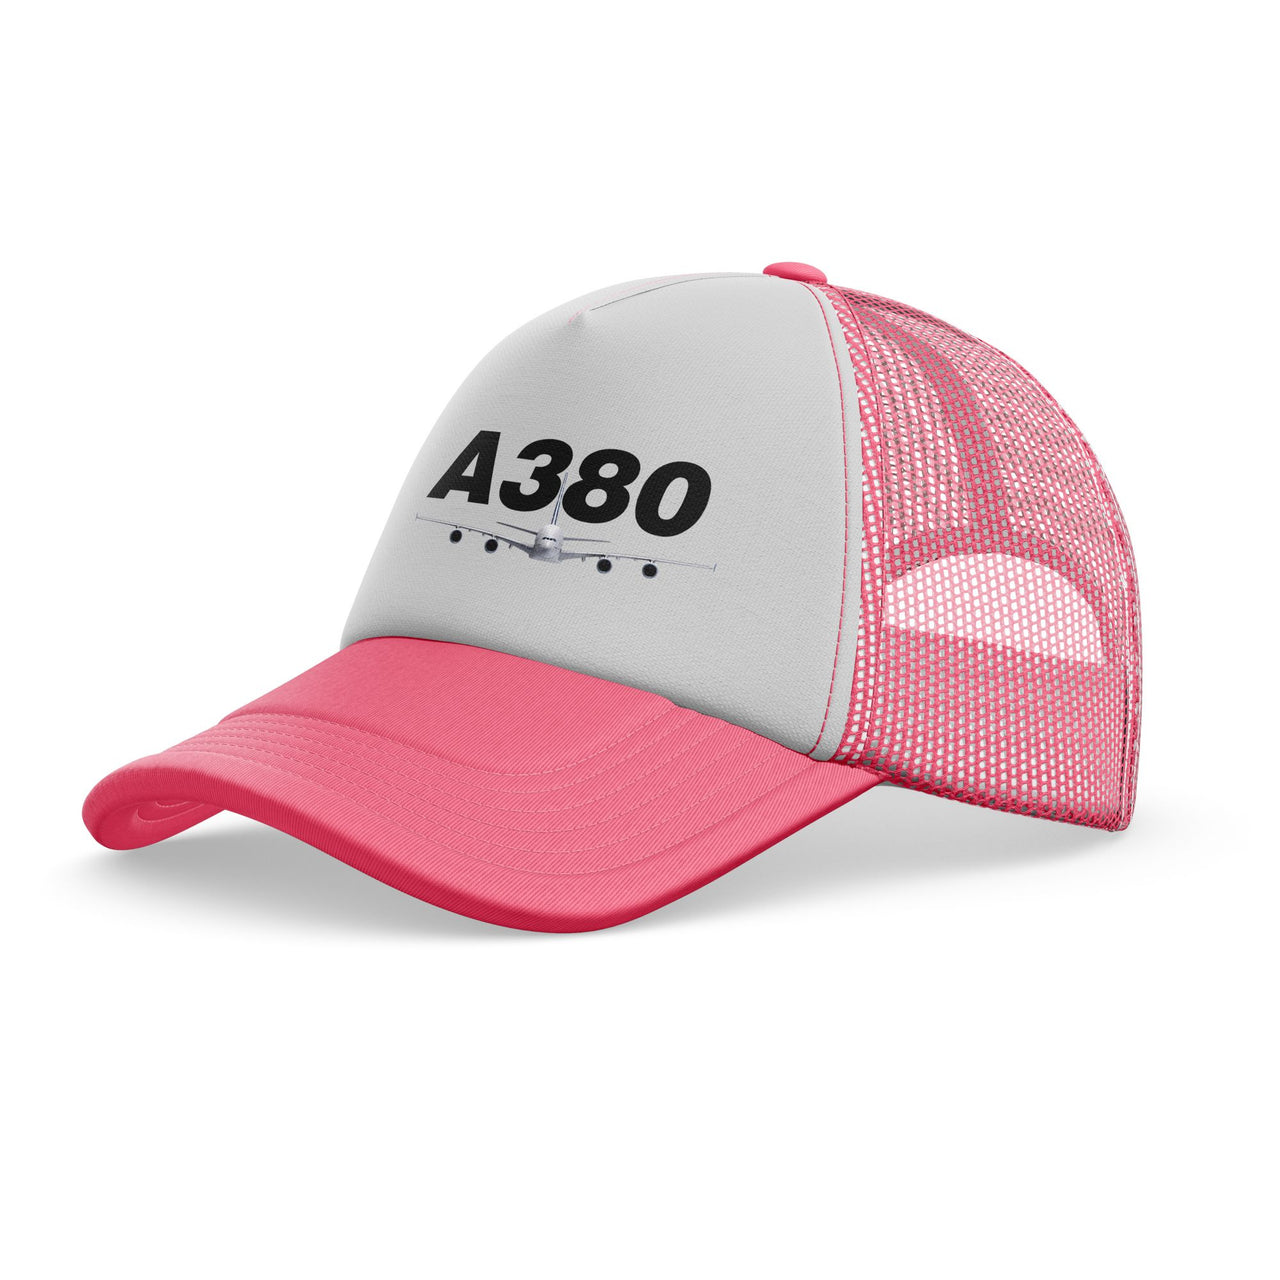 Super Airbus A380 Designed Trucker Caps & Hats